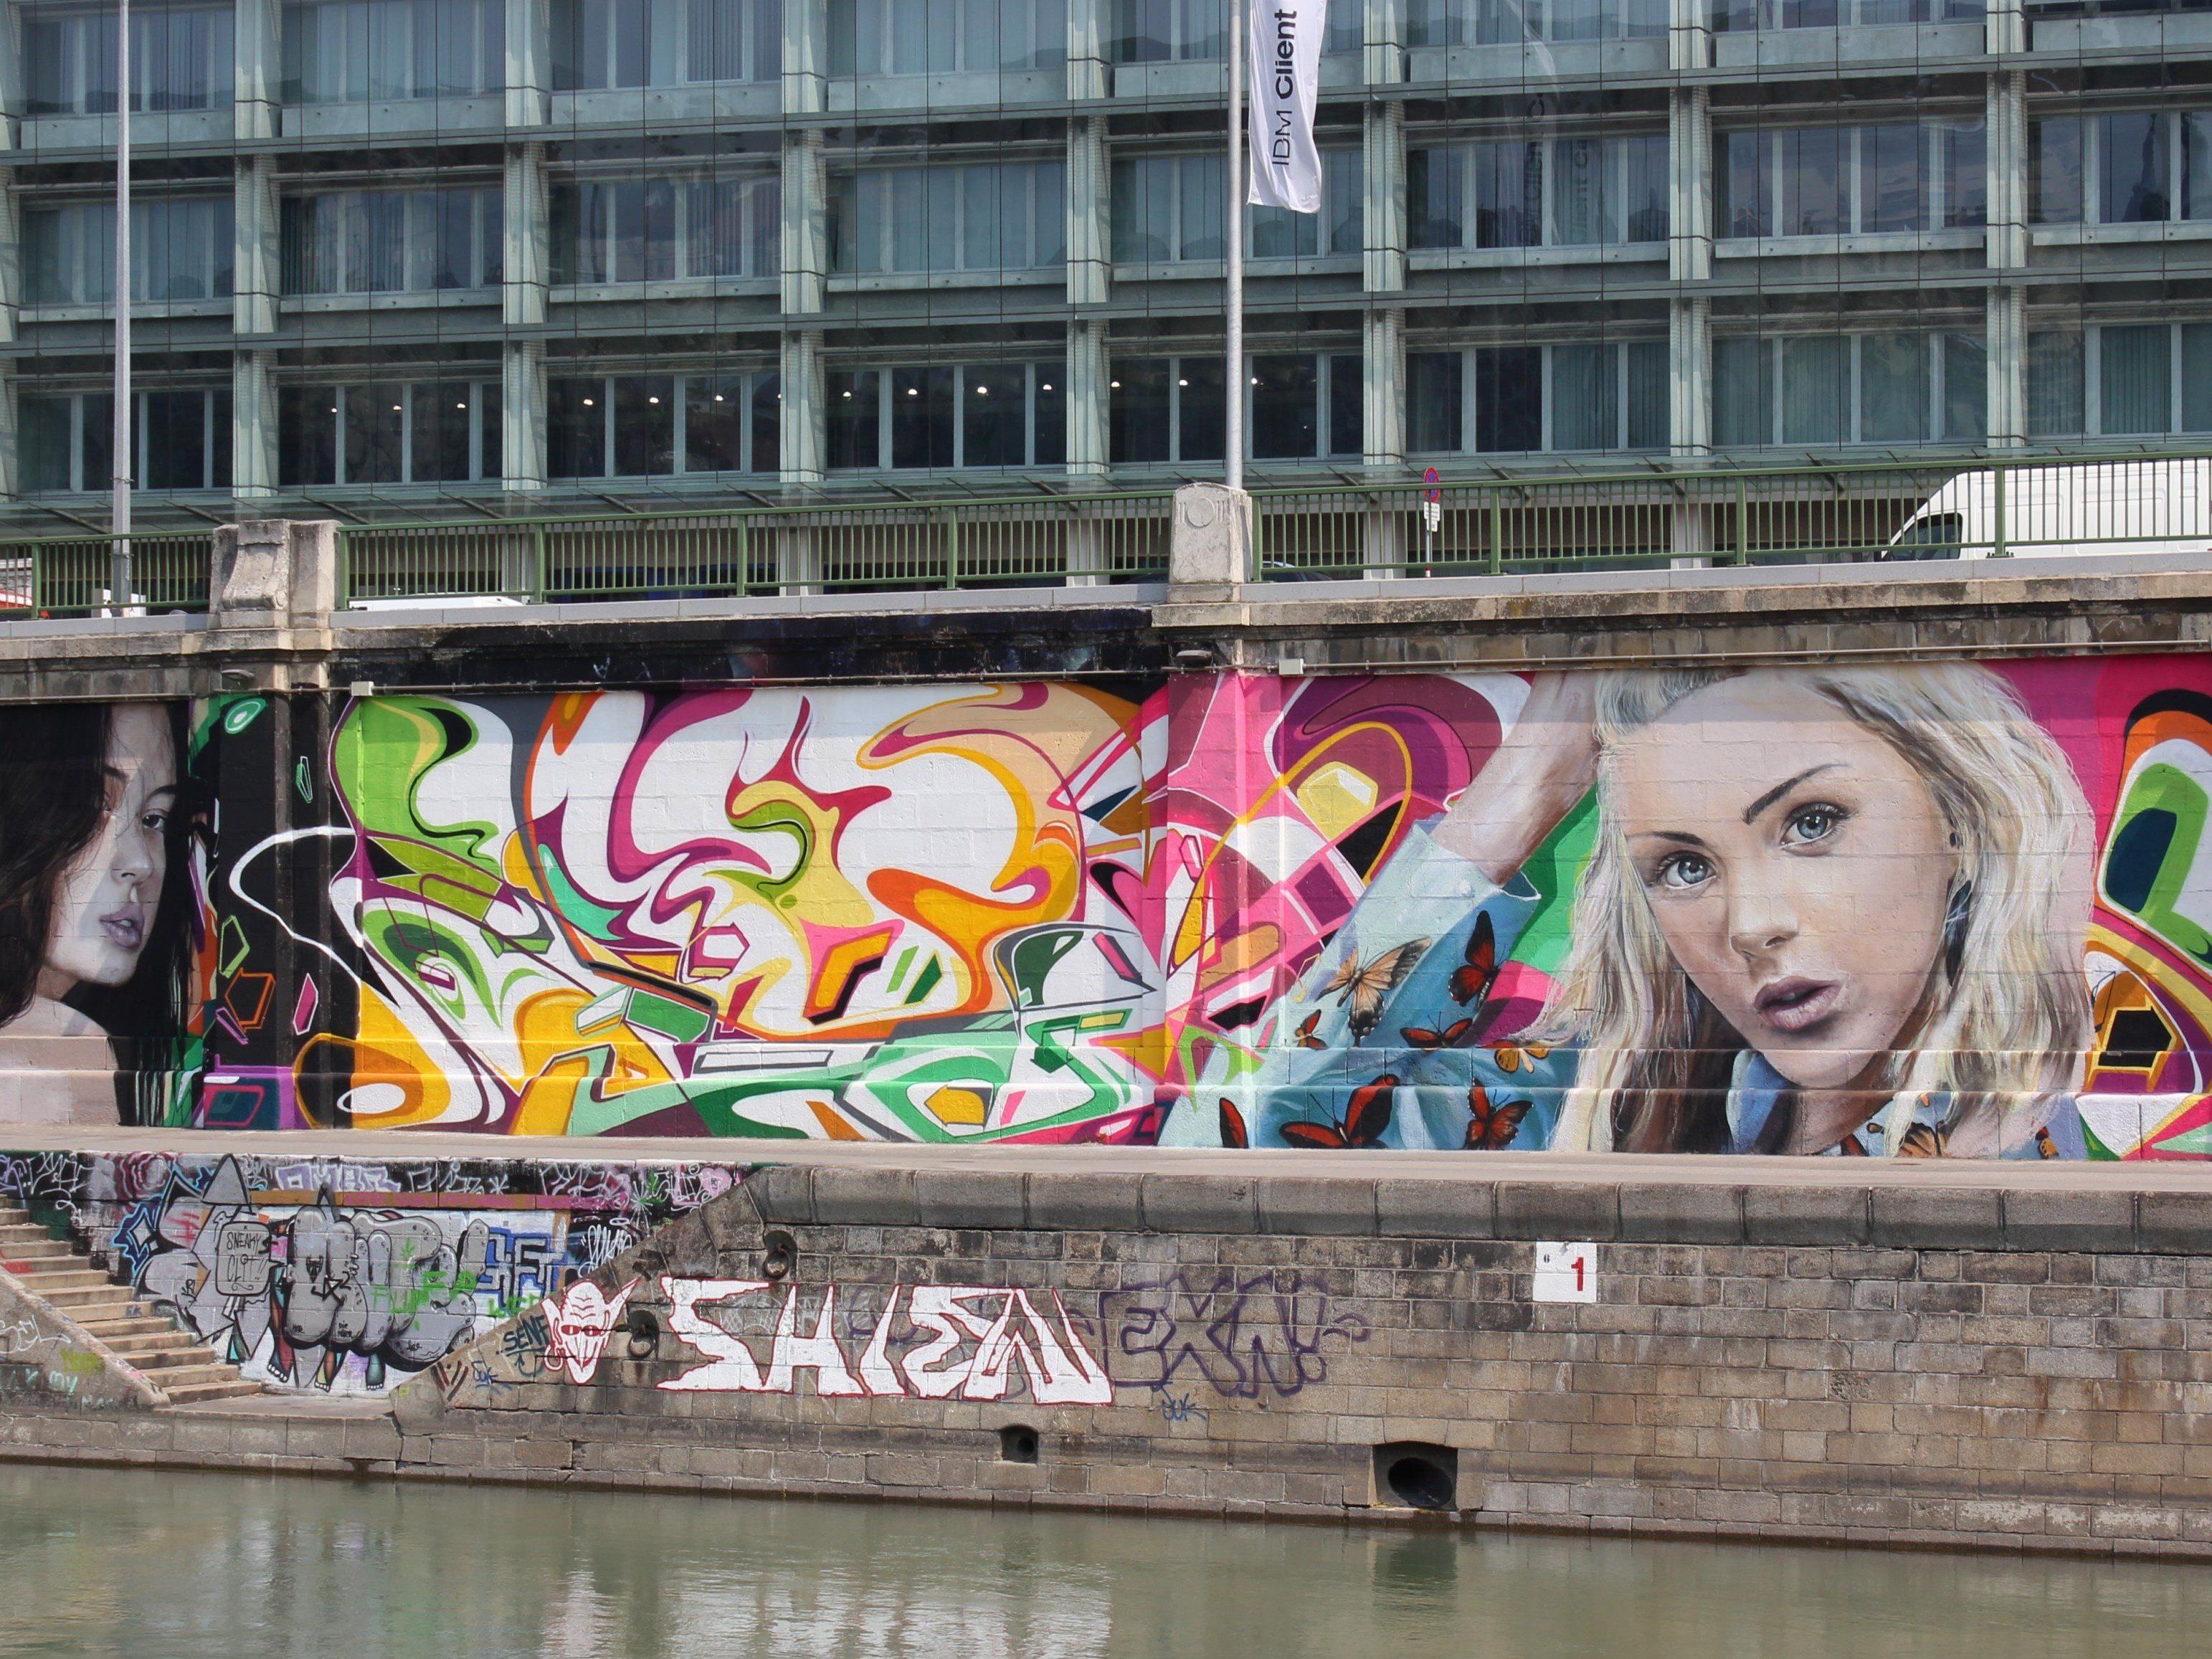 Was sagen Sie zu den Graffitis entlang des Donaukanals?